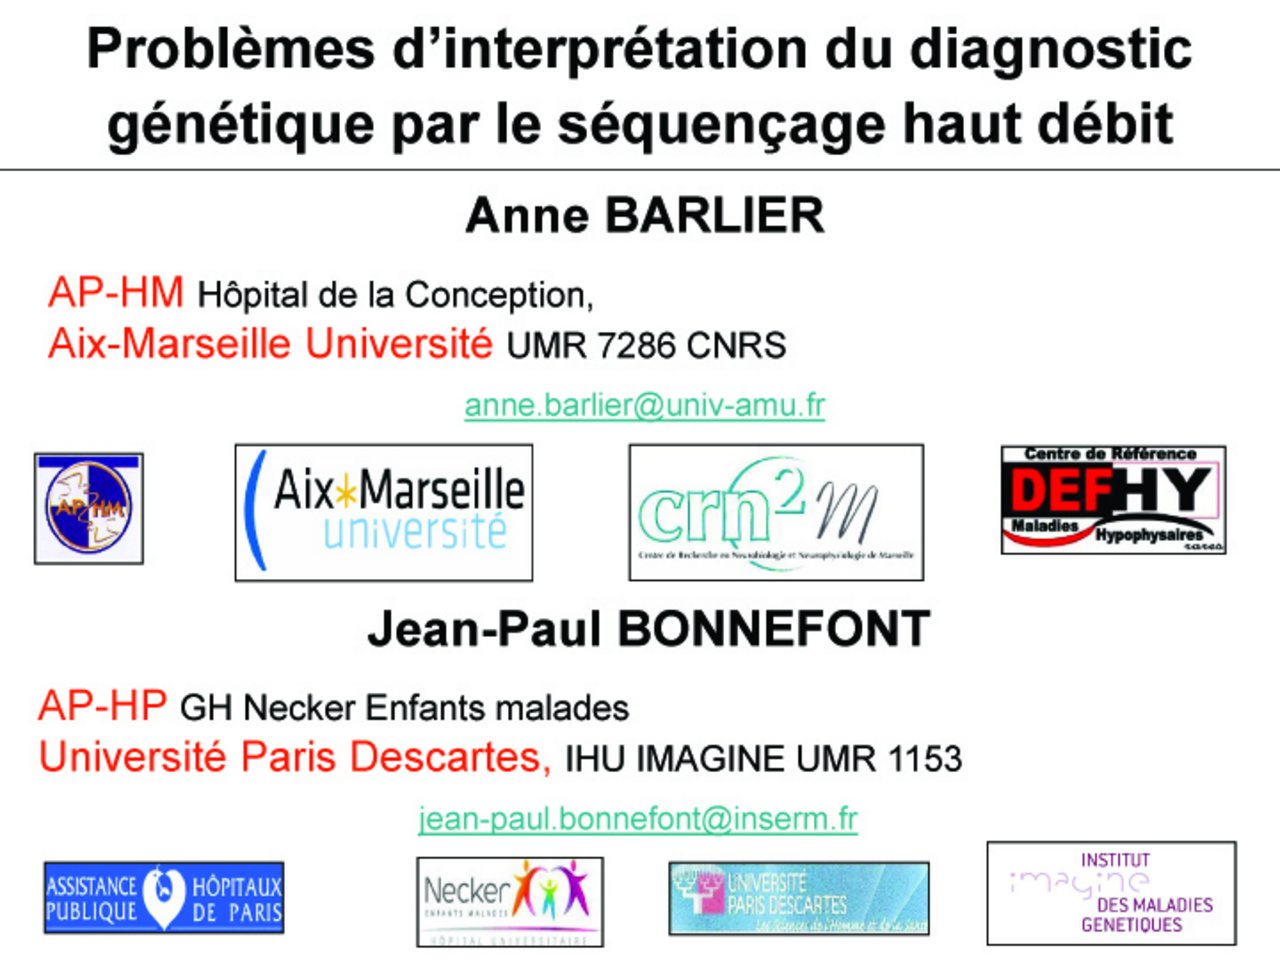 Barlier, Bonnefont : "Problèmes d'interprétation du diagnostic génétique par le séquençage haut débit"